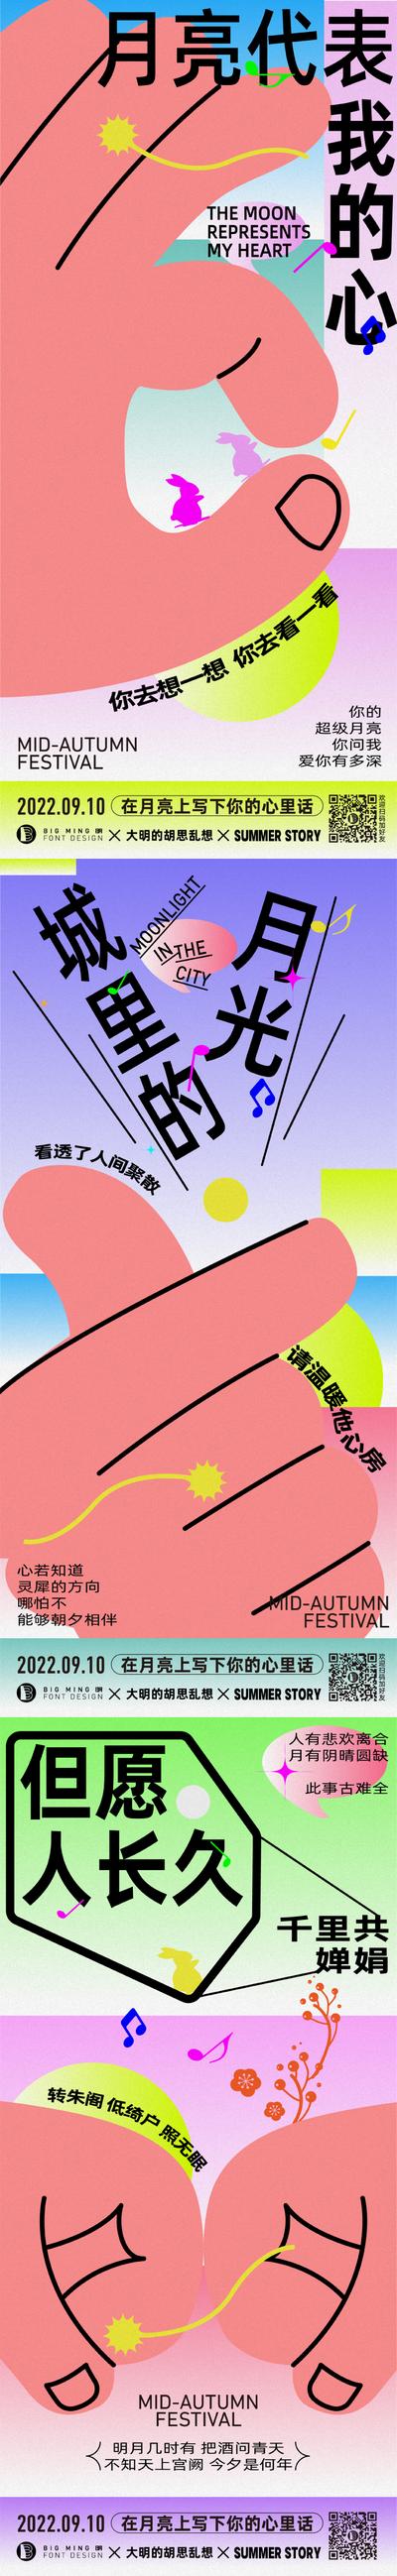 南门网 海报 地产 中秋节  音乐  歌曲  创意  手势  甜蜜 系列  